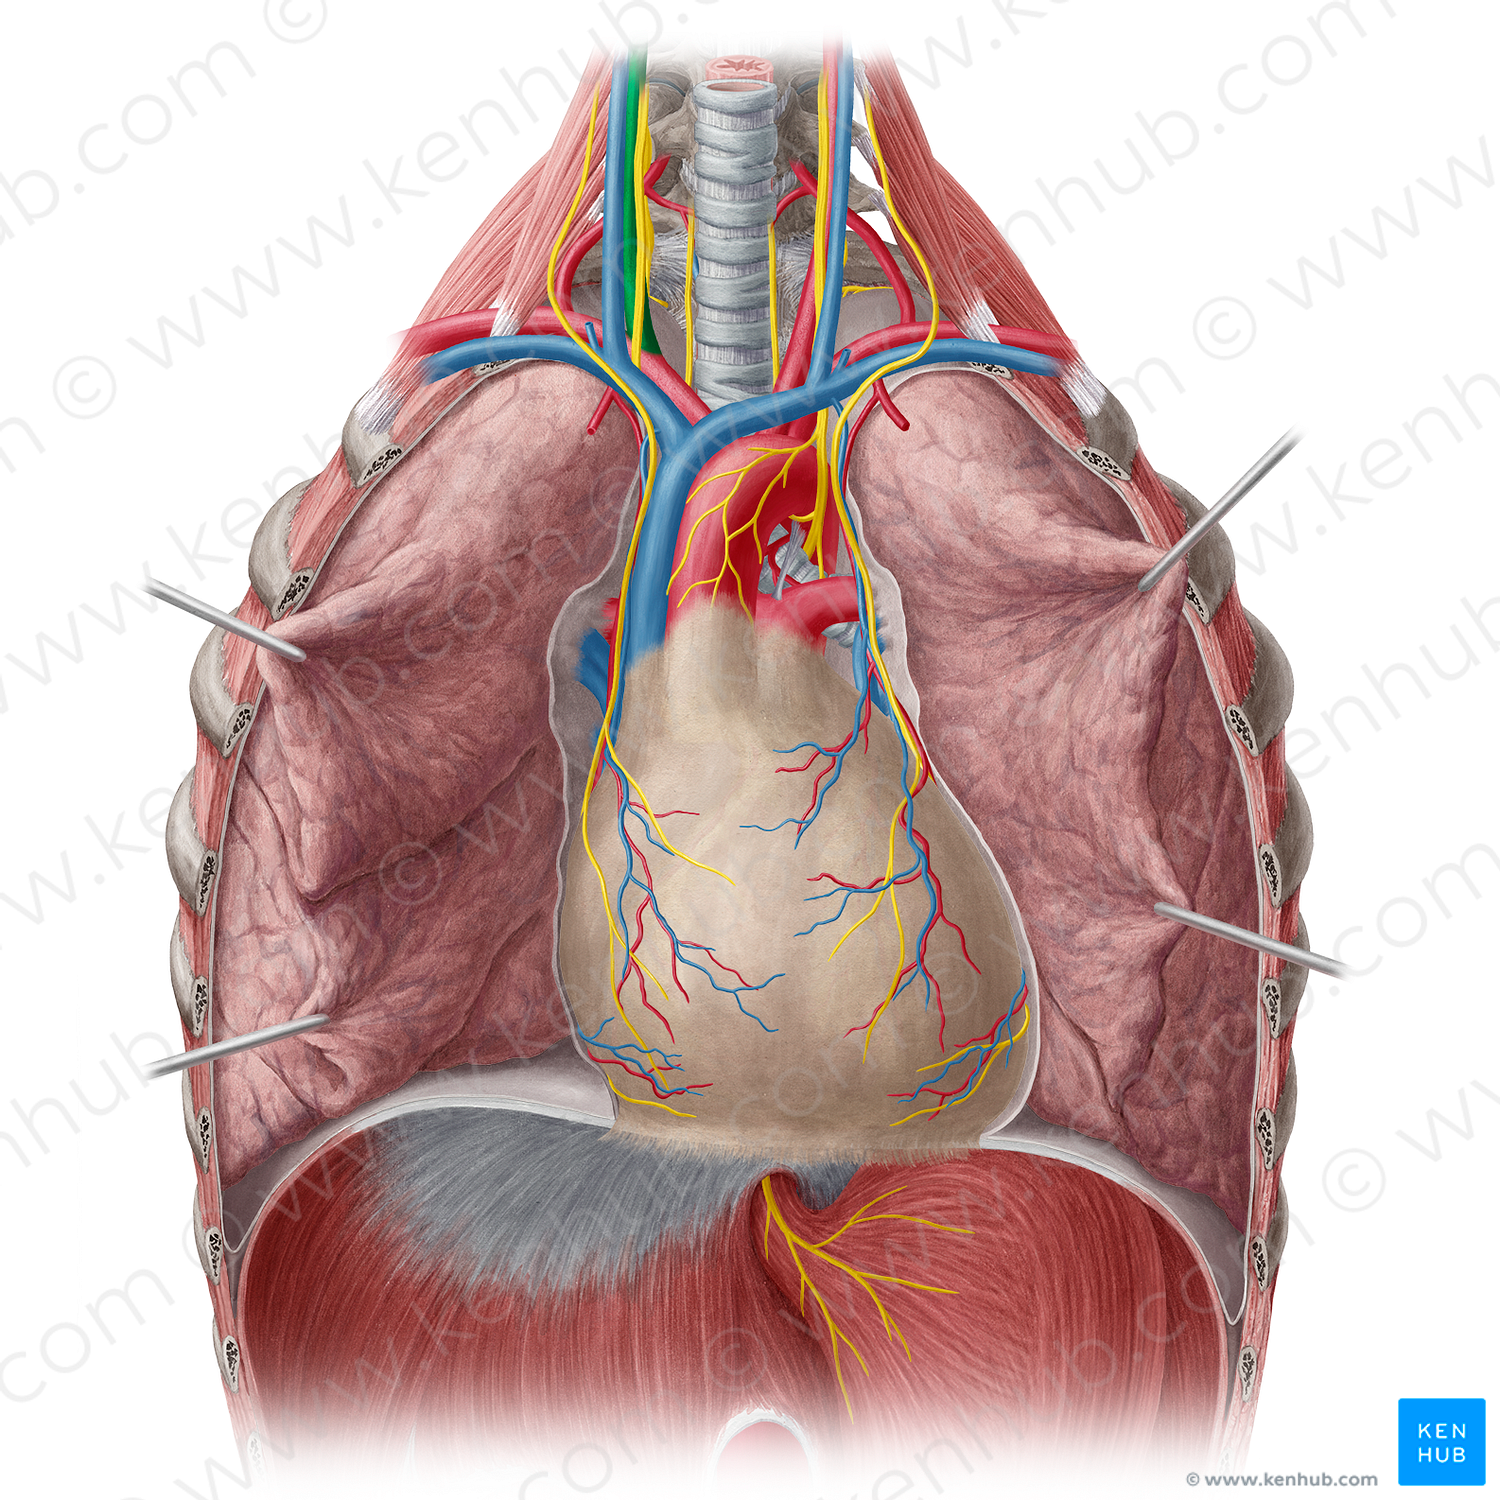 Right common carotid artery (#940)